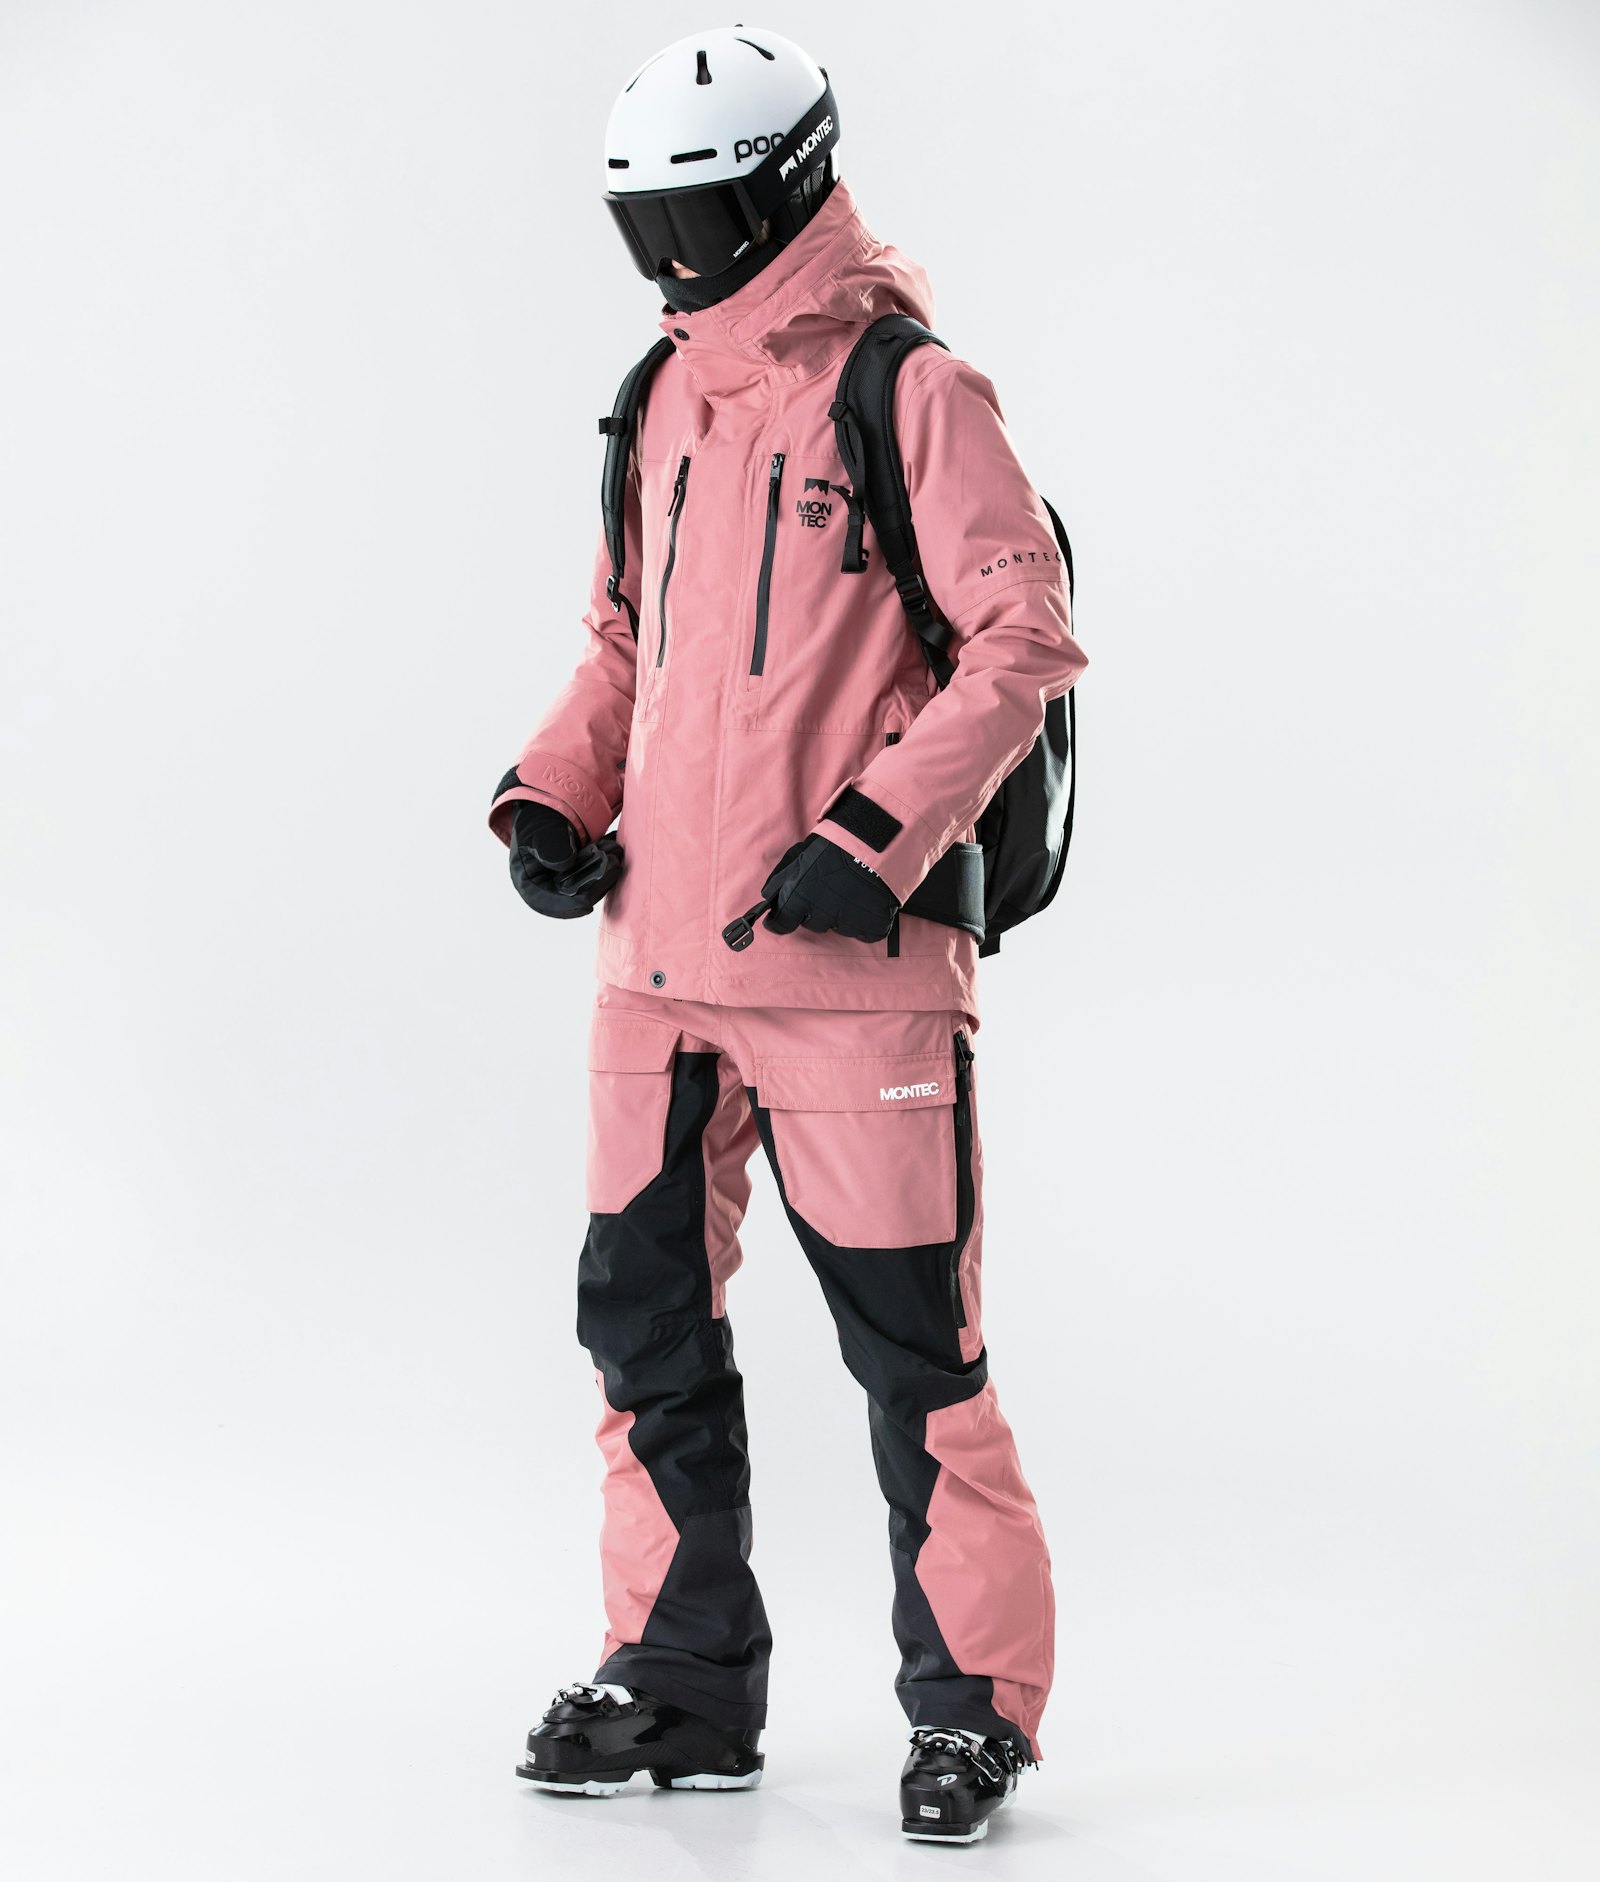 Fawk W 2020 Chaqueta Esquí Mujer Pink